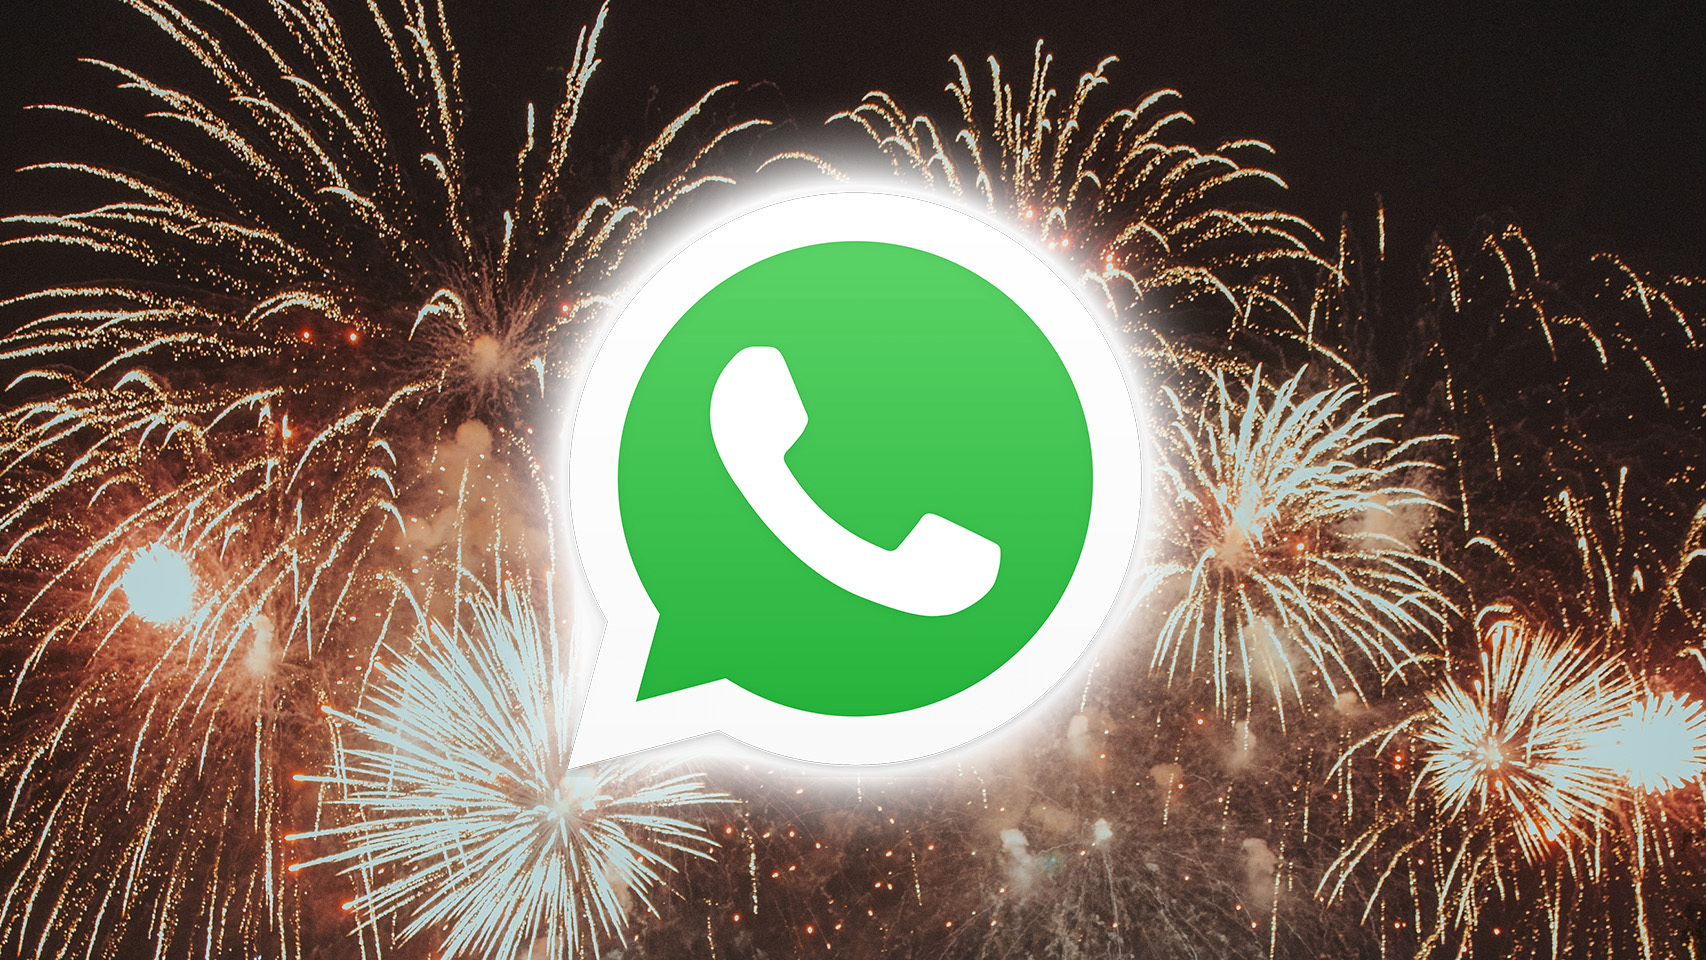 Fuegos artificiales tras el logo de WhatsApp.